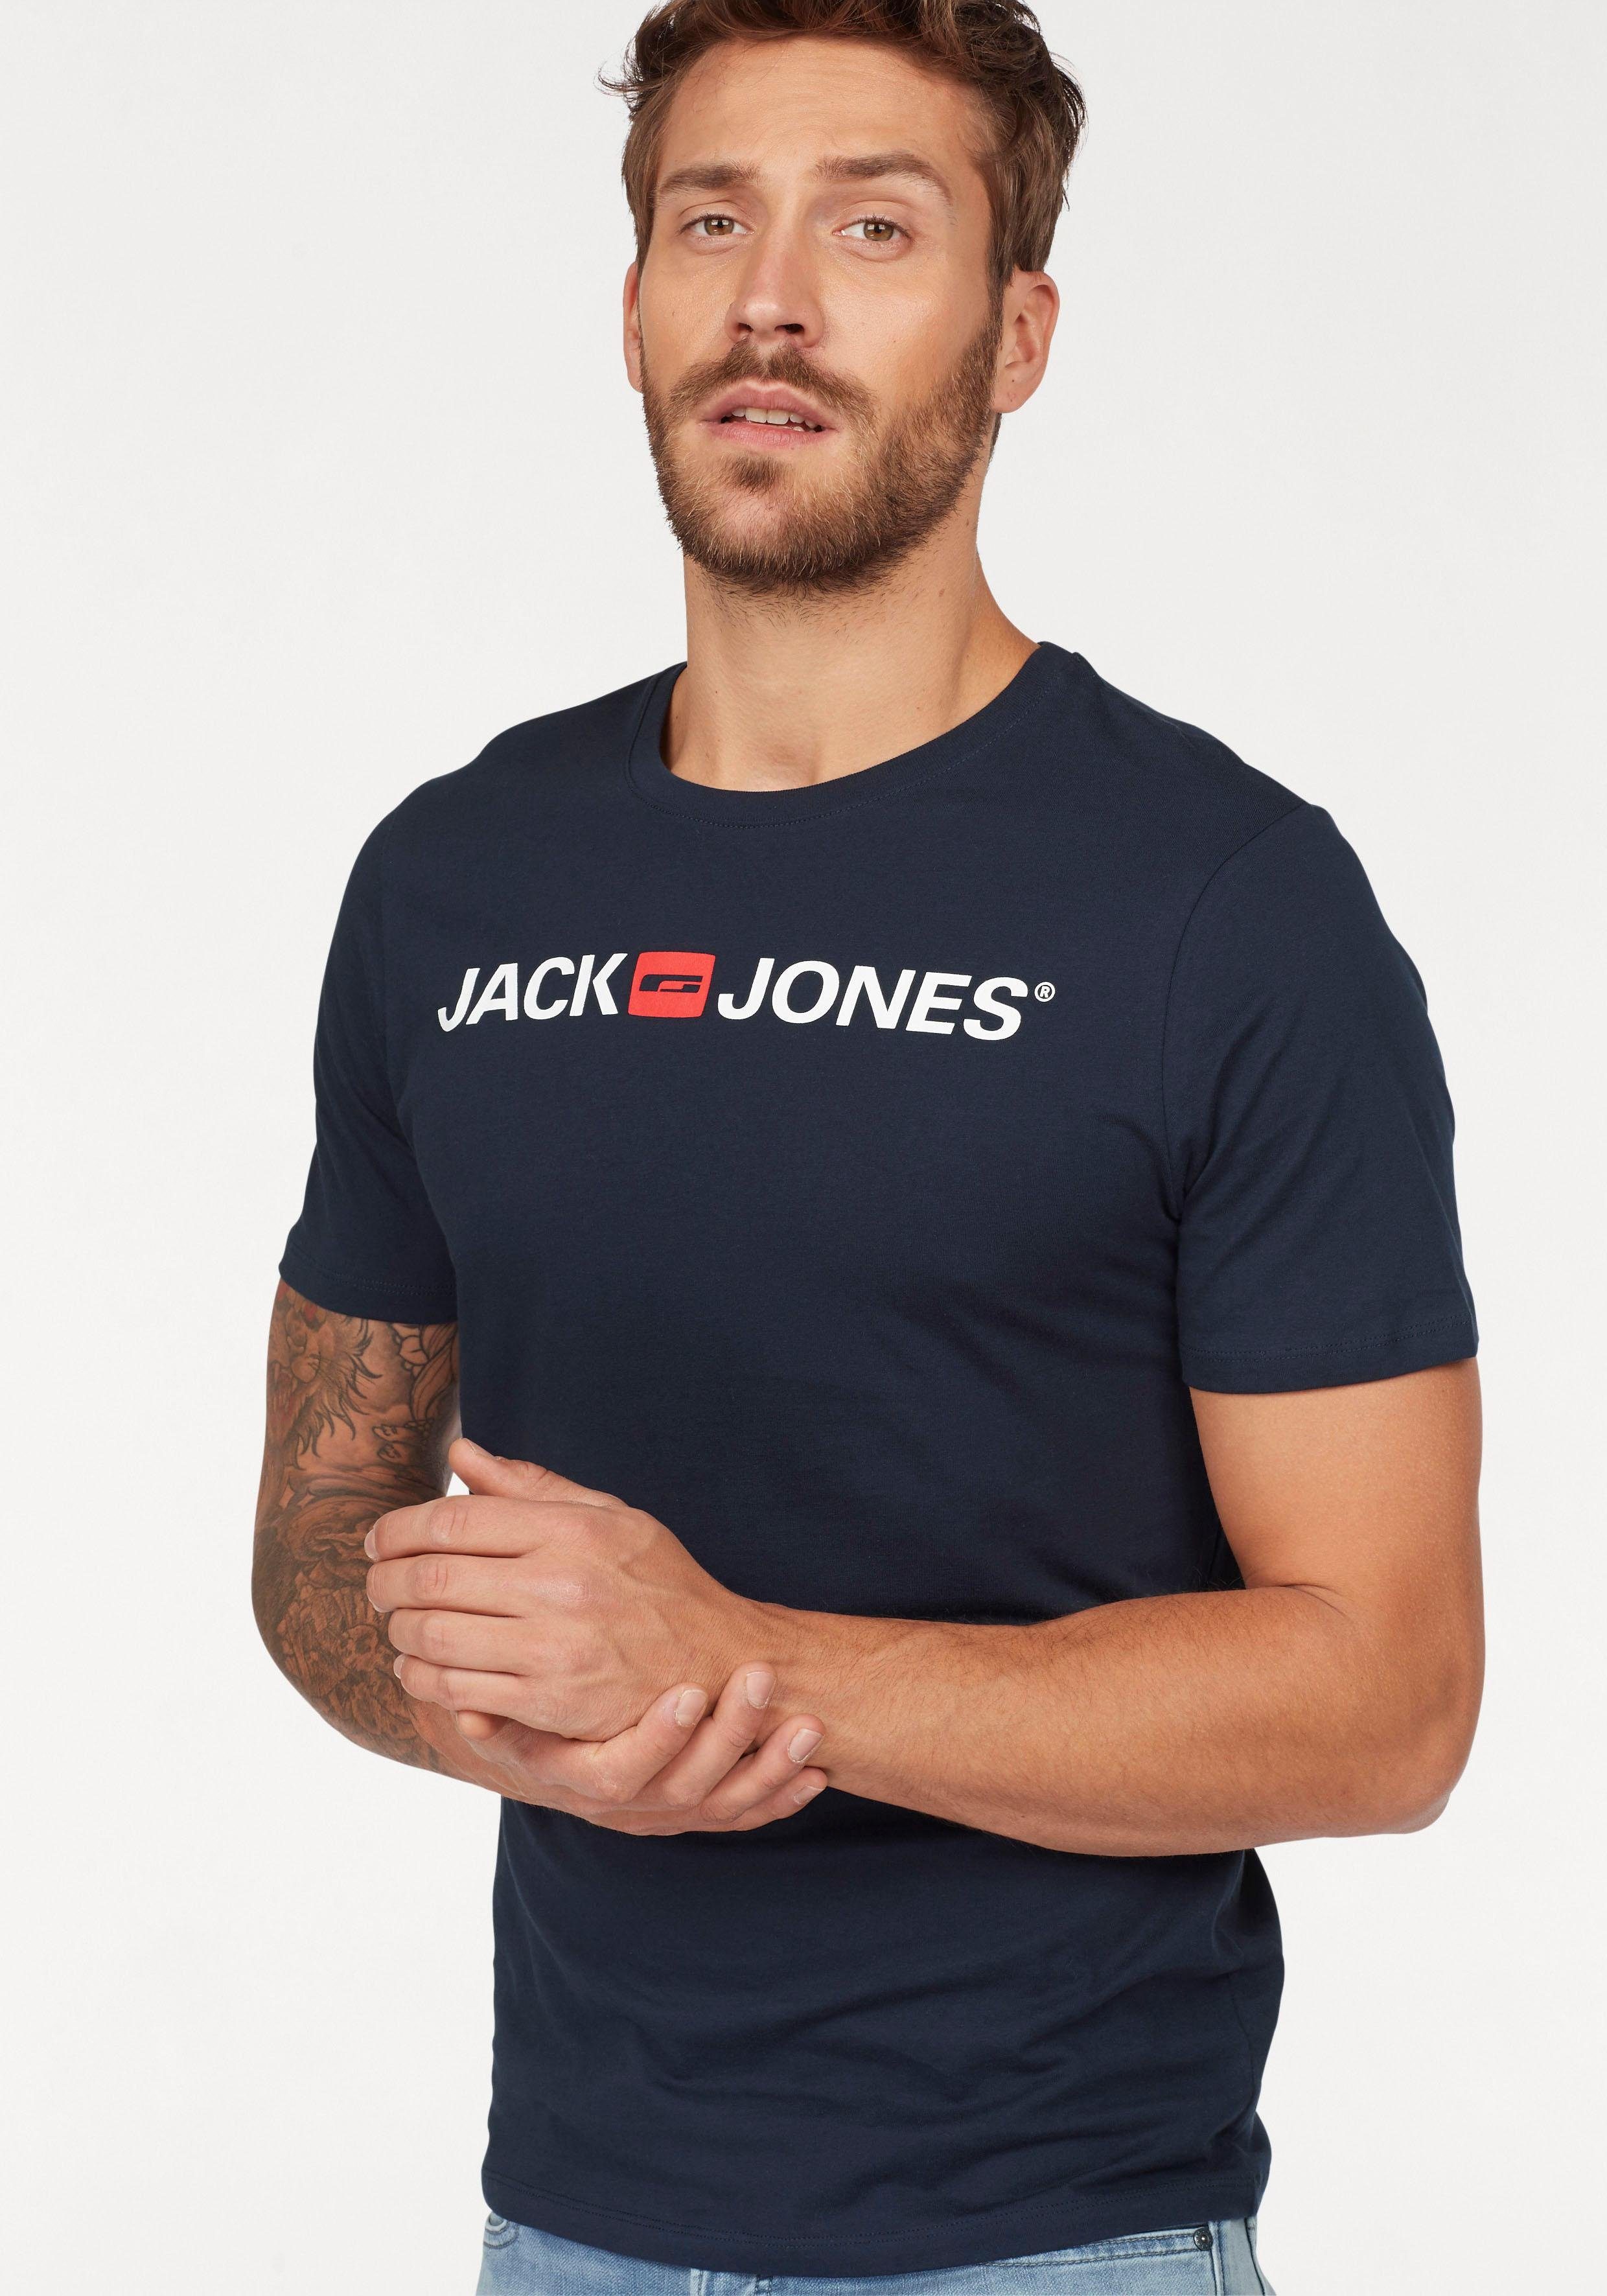 Jack & Jones Shirts online kaufen | OTTO